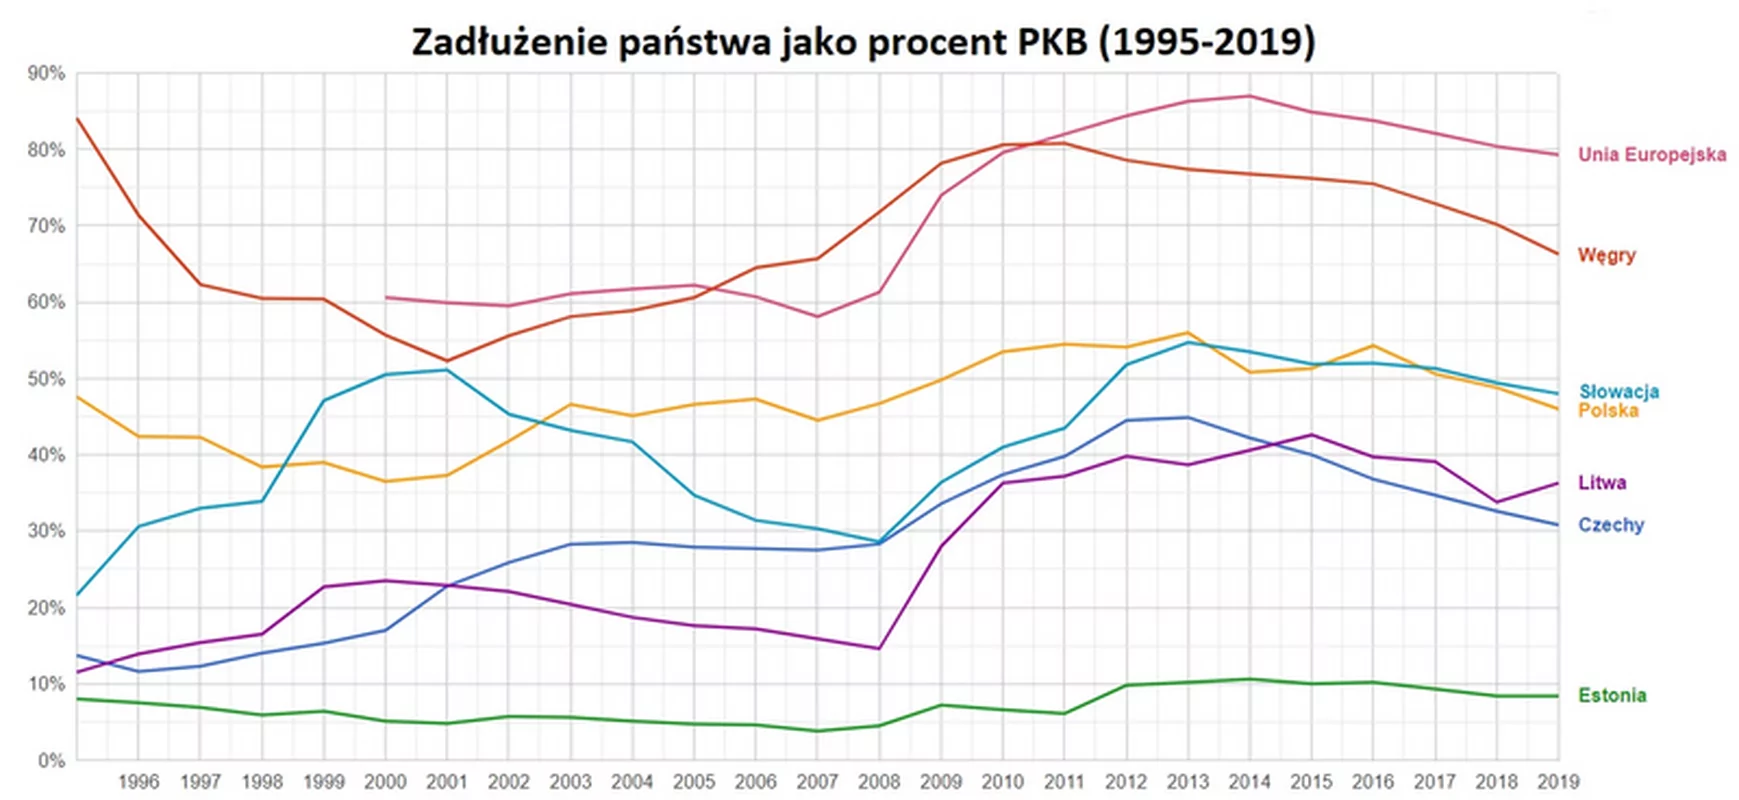 Najwyższy dług publiczny w historii Polski na 2021 r. 1,5 biliona złotych